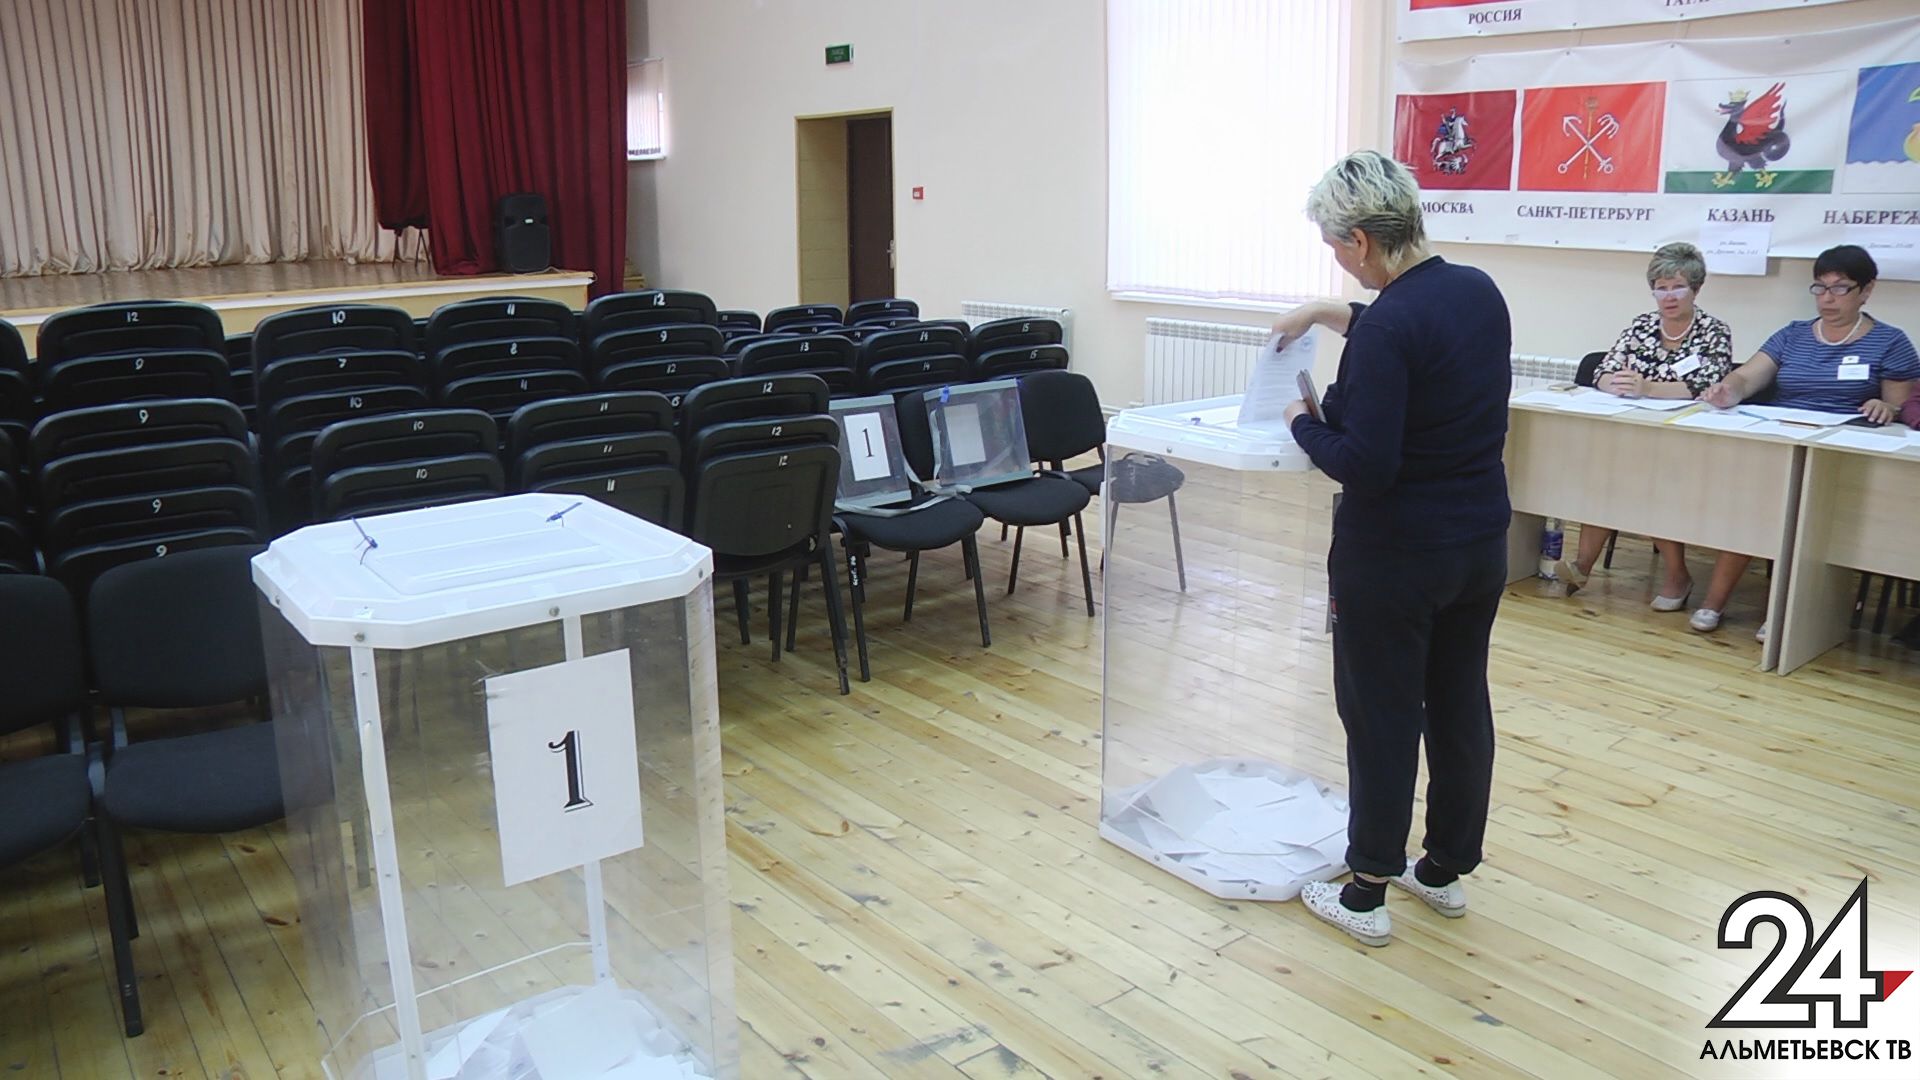 Итоги известны: в Альметьевском районе прошли дополнительные выборы депутатов